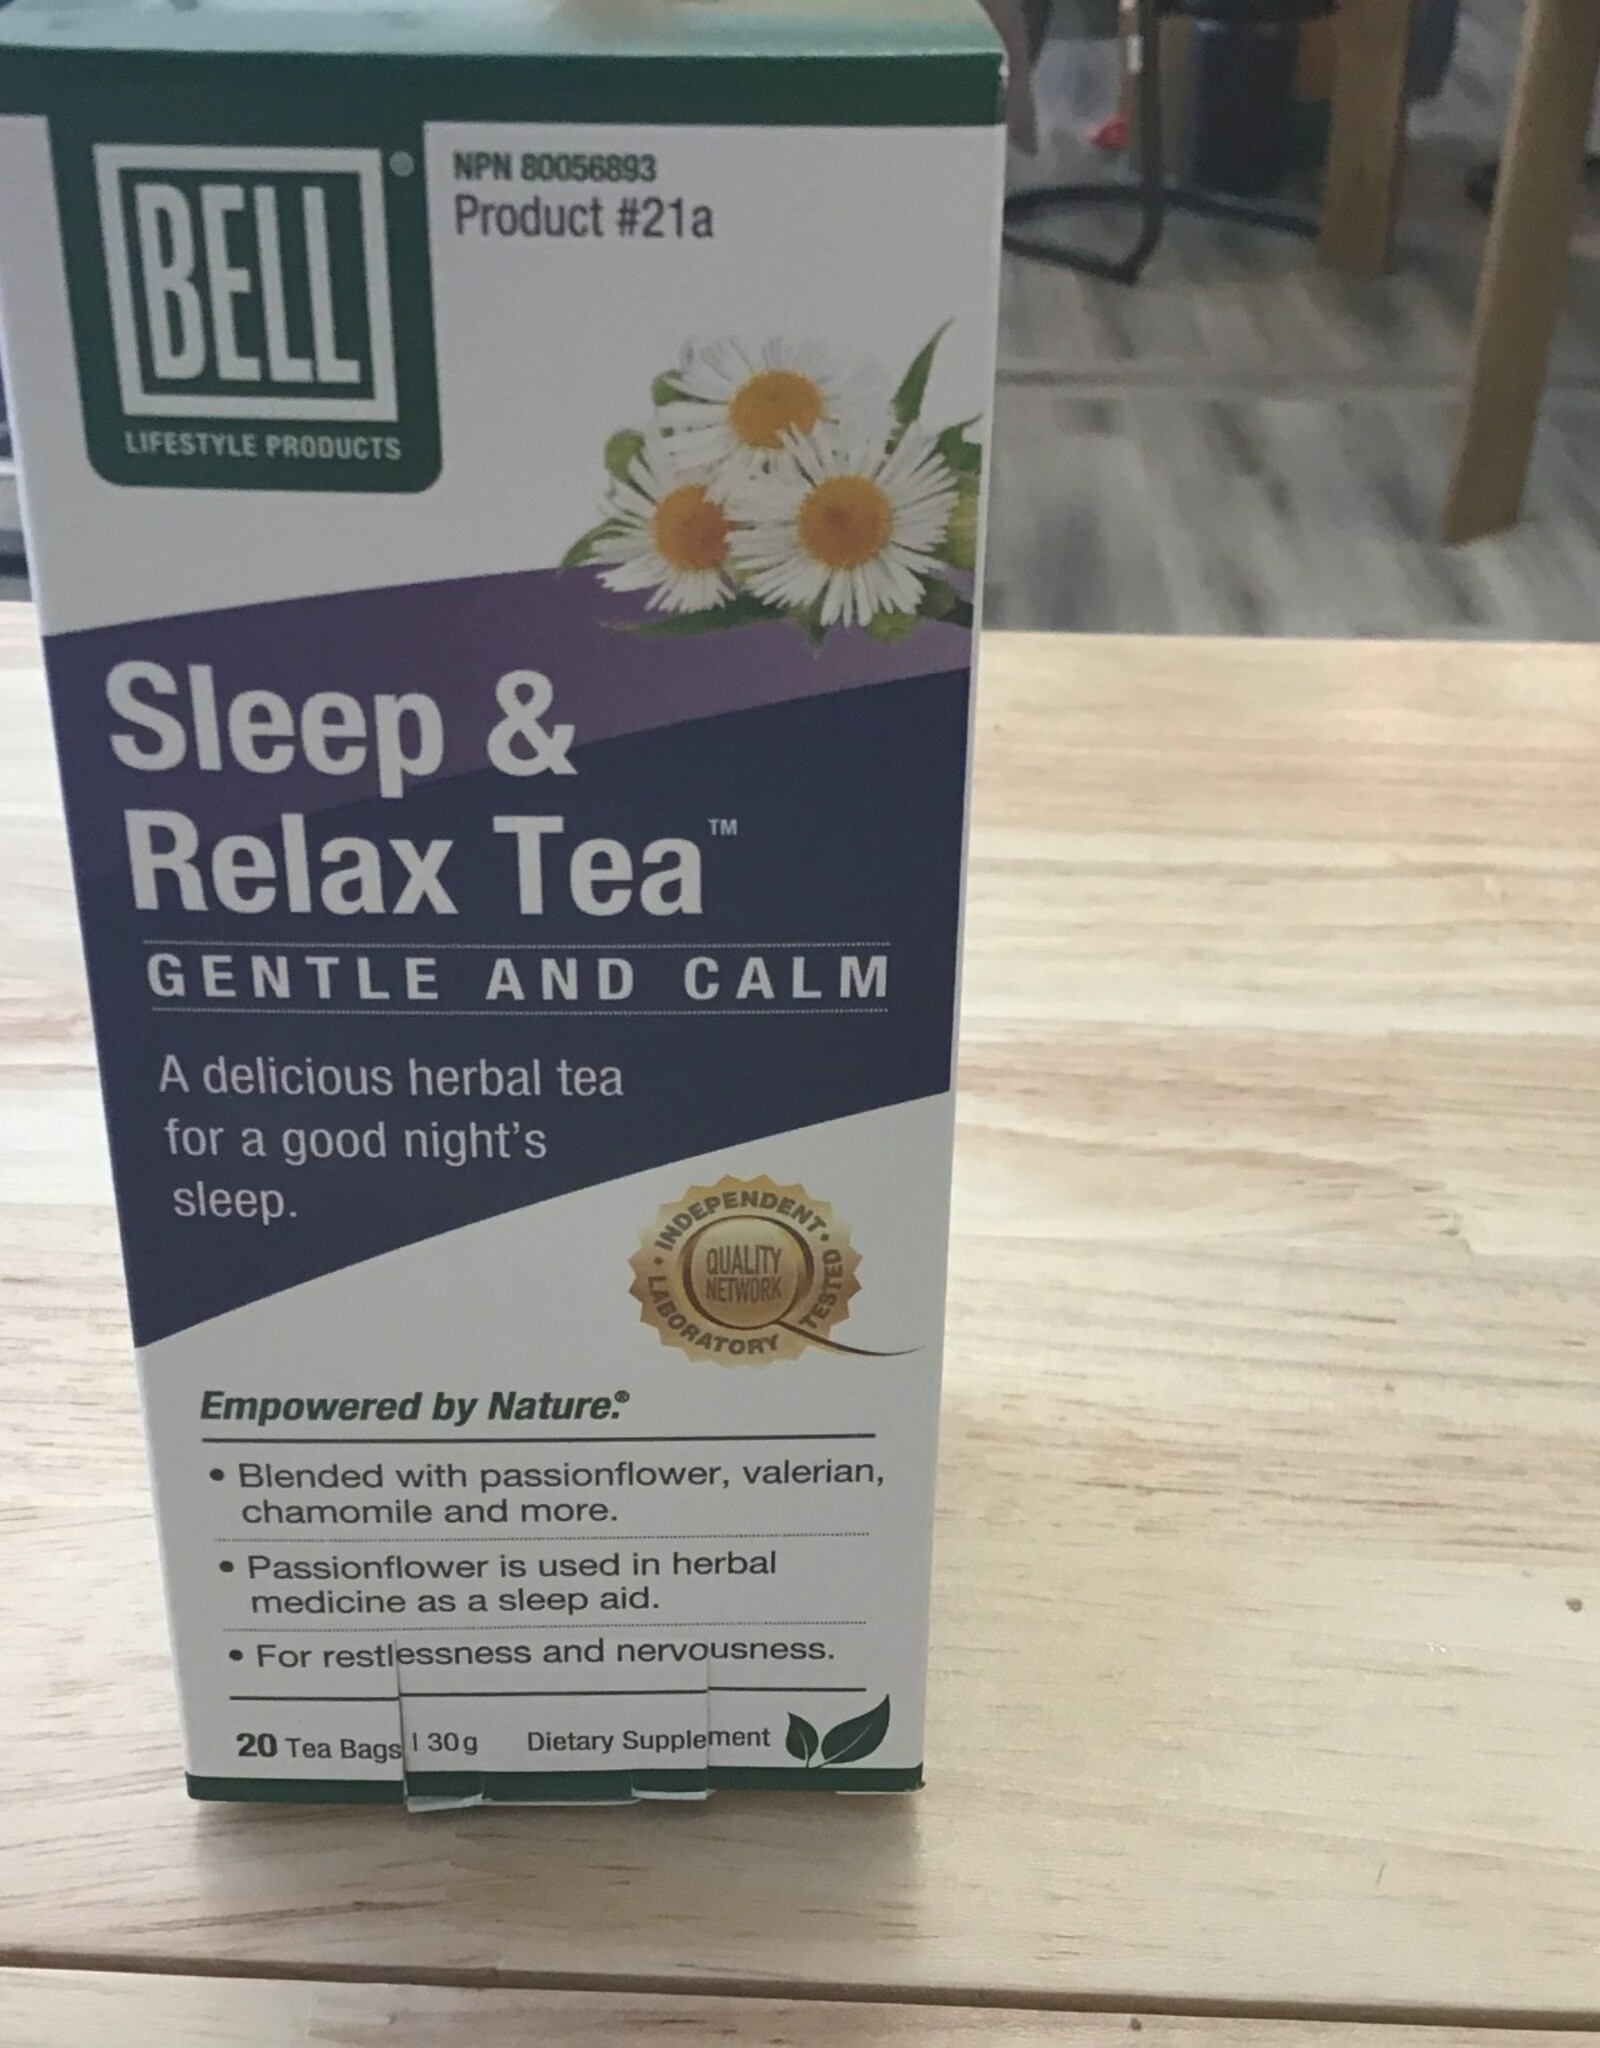 Bell Bell sleep & relax tea